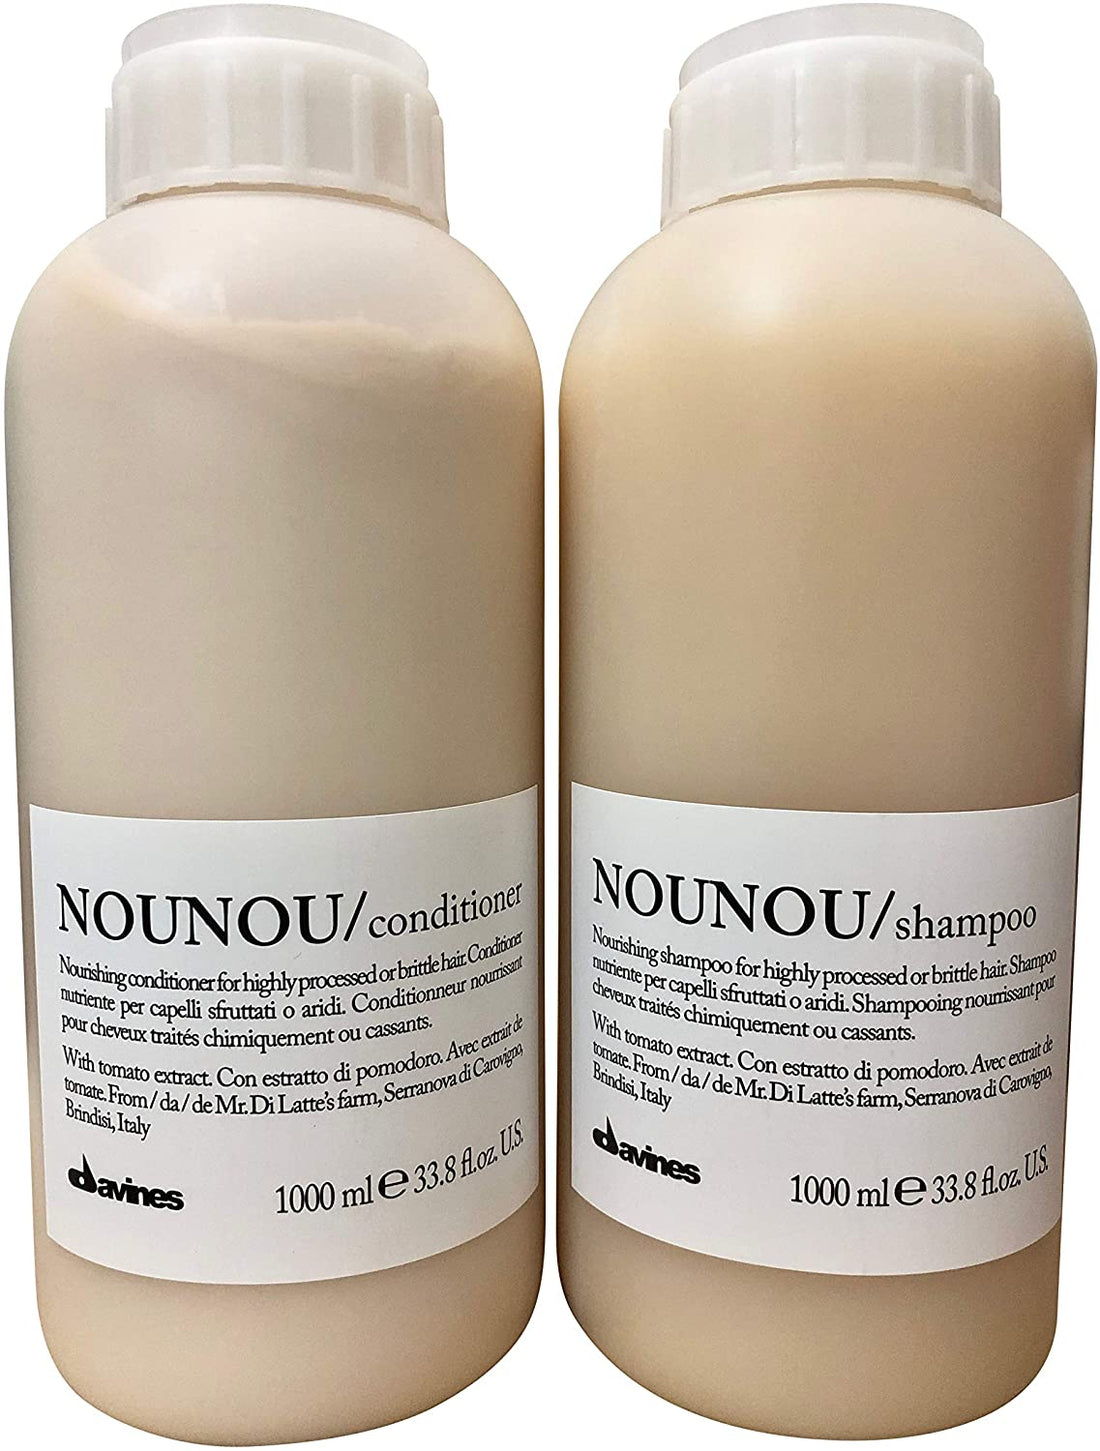 Davines Nounou Shampoo + Conditioner Litre 1000ml Duo